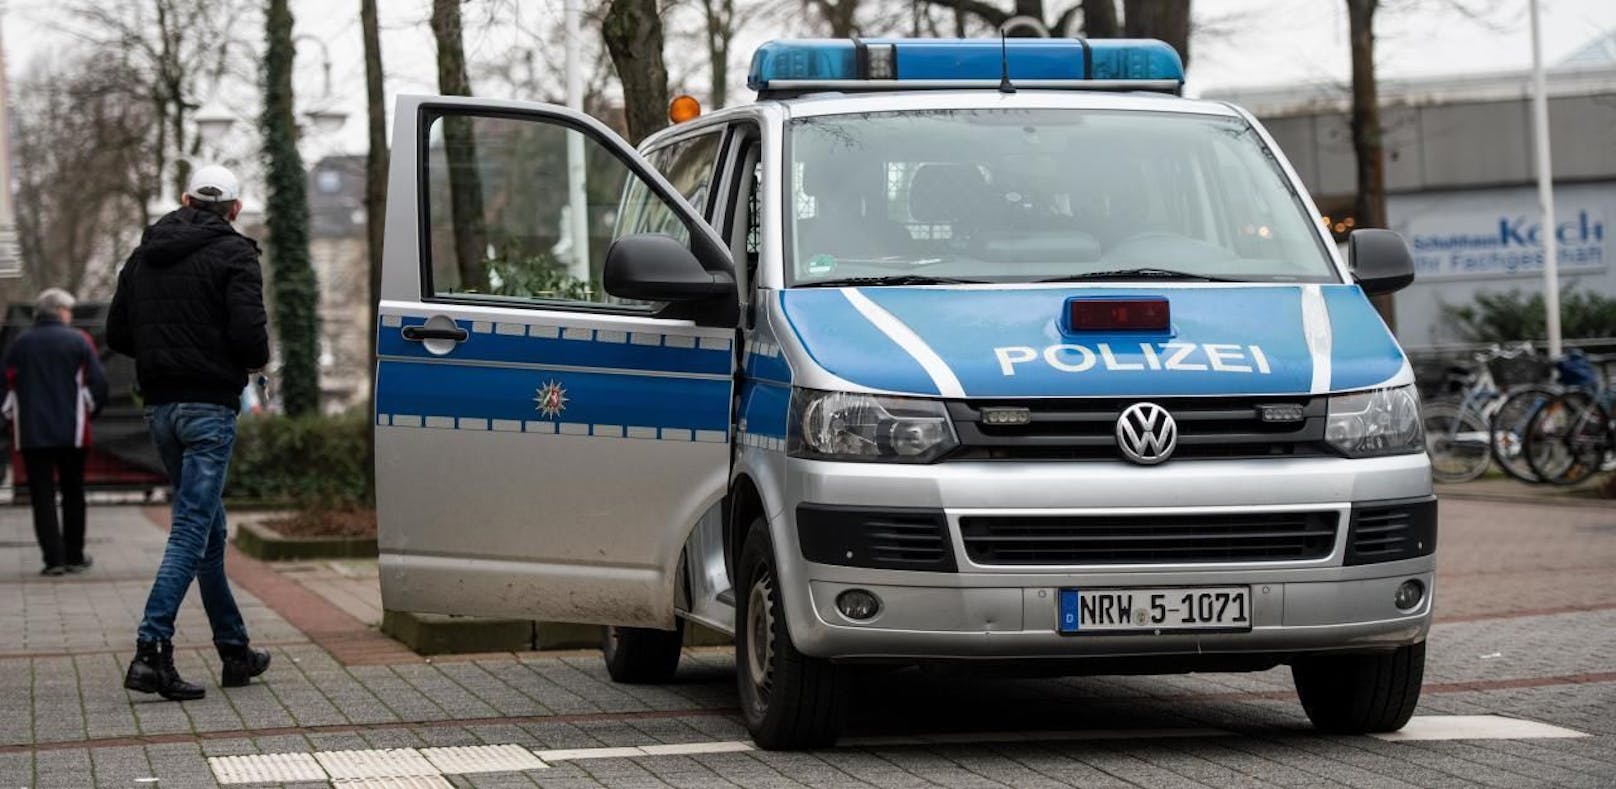 Ein Polizeiauto in Bad Oeynhausen, Deutschland. Symbolbild